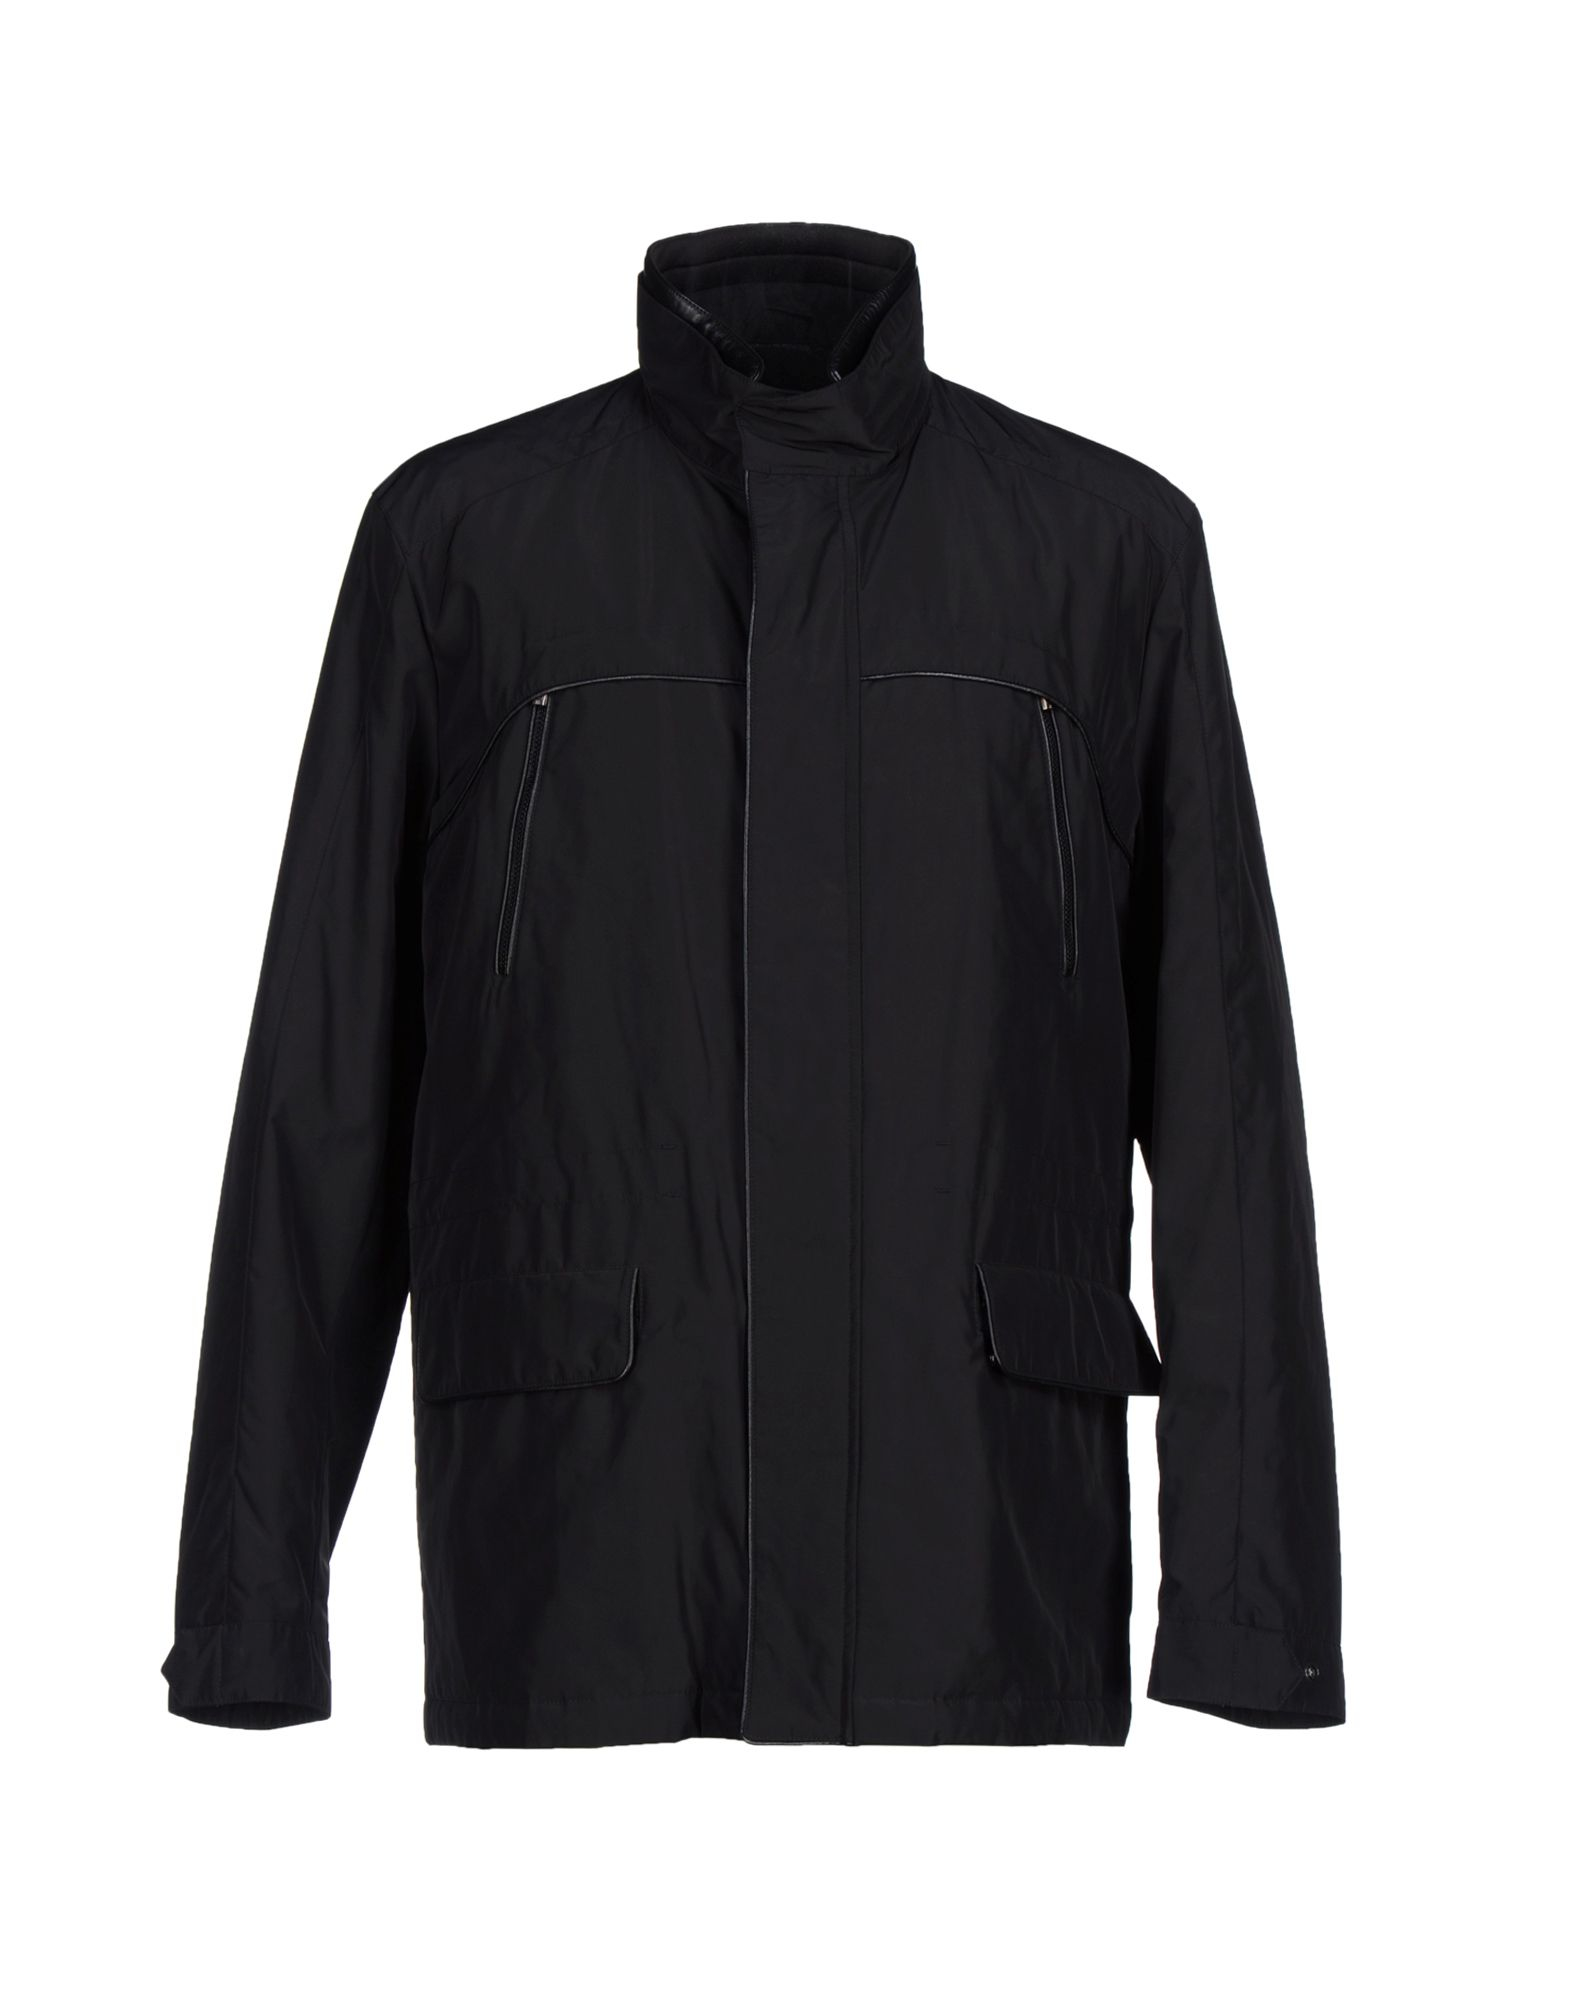 Lyst - Zegna Sport Jacket in Black for Men